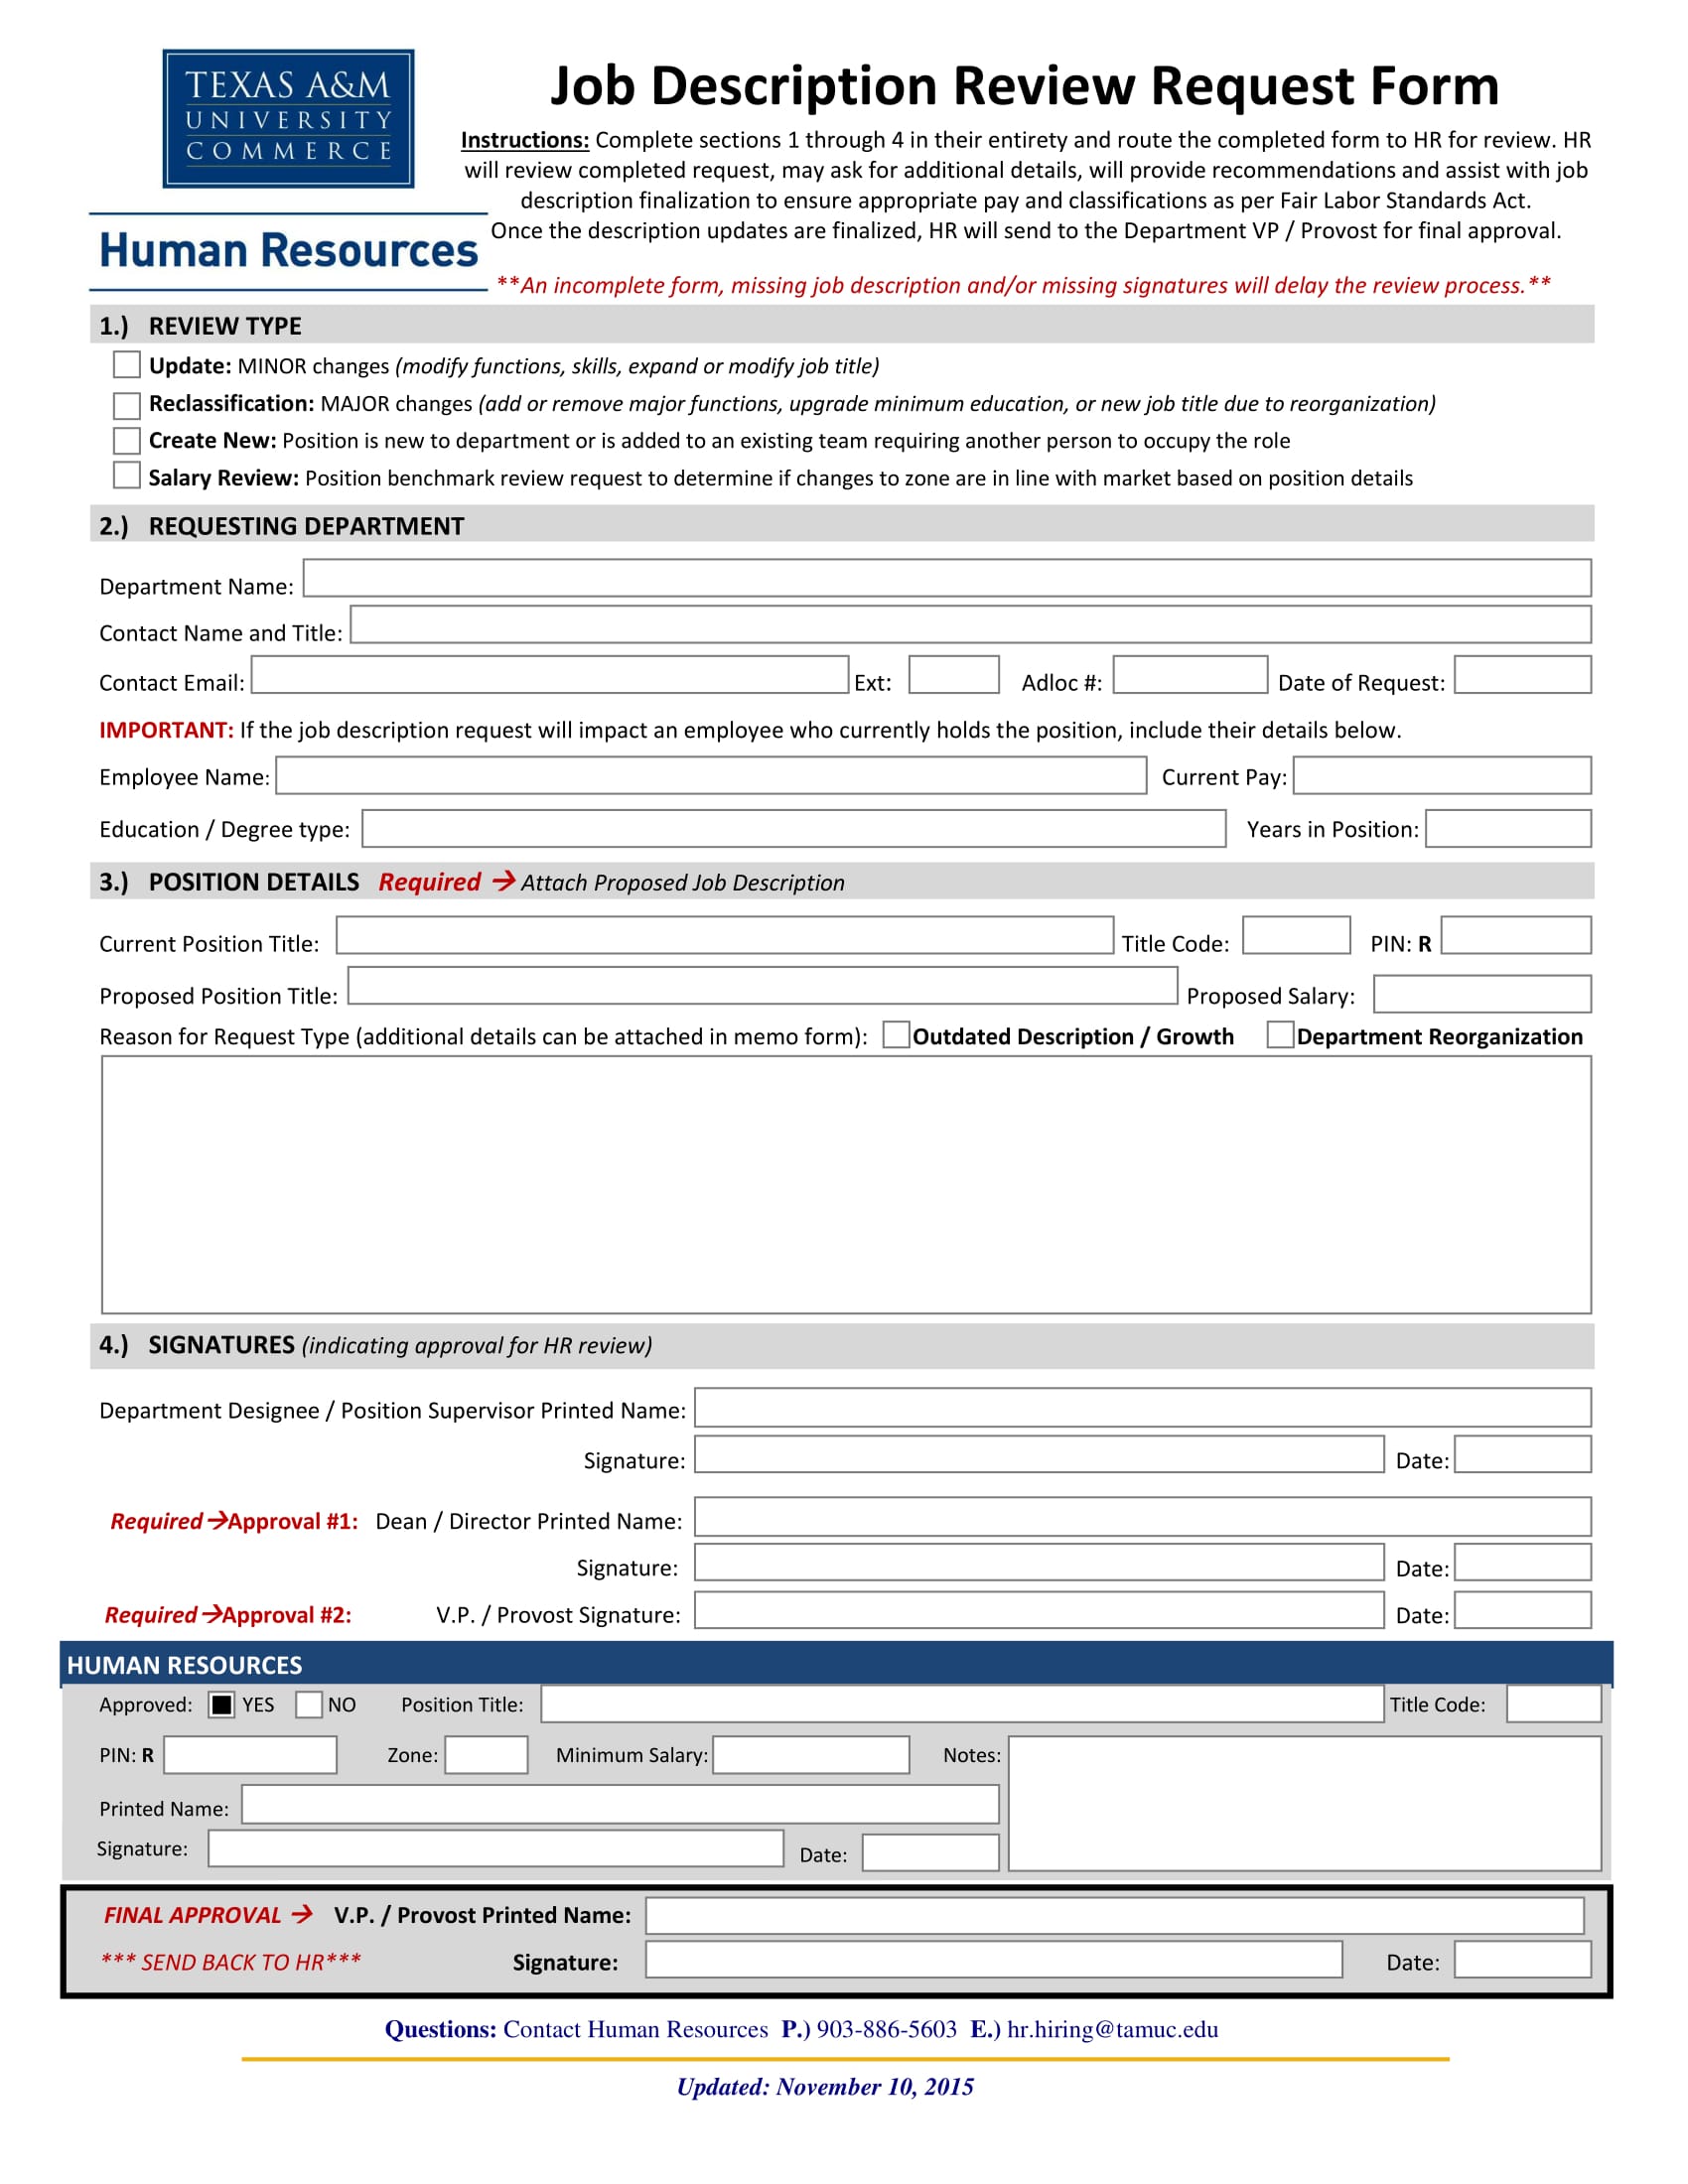 job description review request form 1